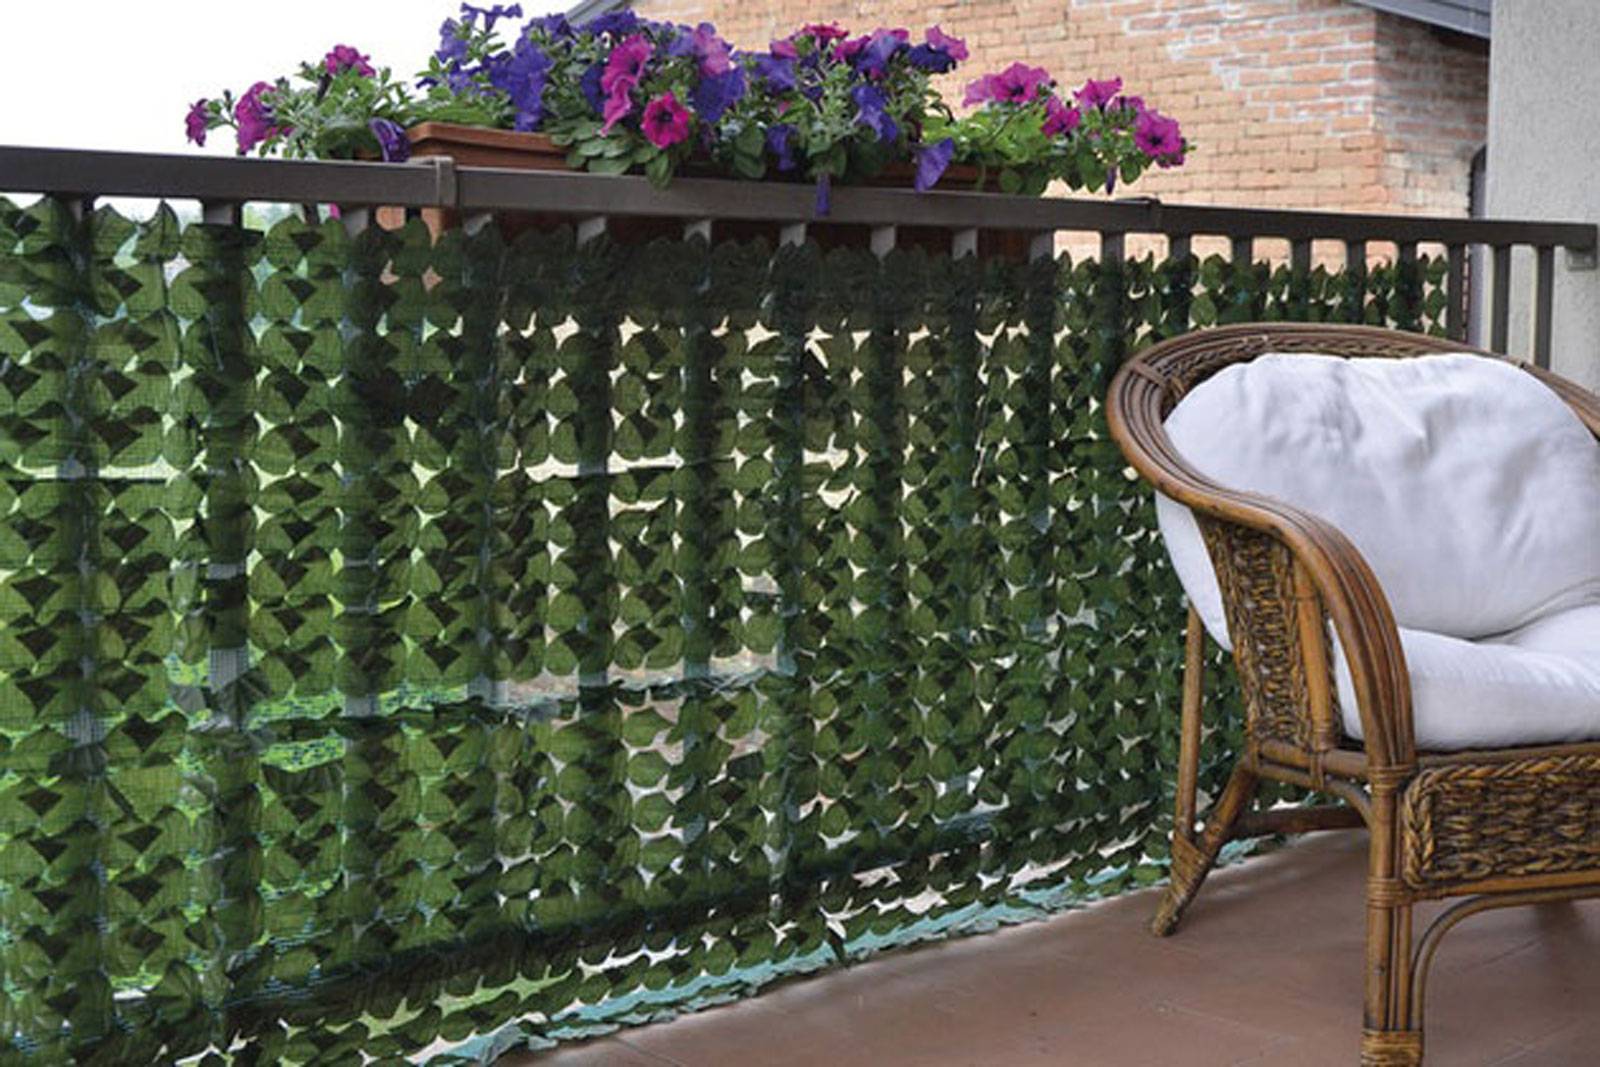 Siepe finta artificiale per Giardino Balcone Recinzione 1x3mt